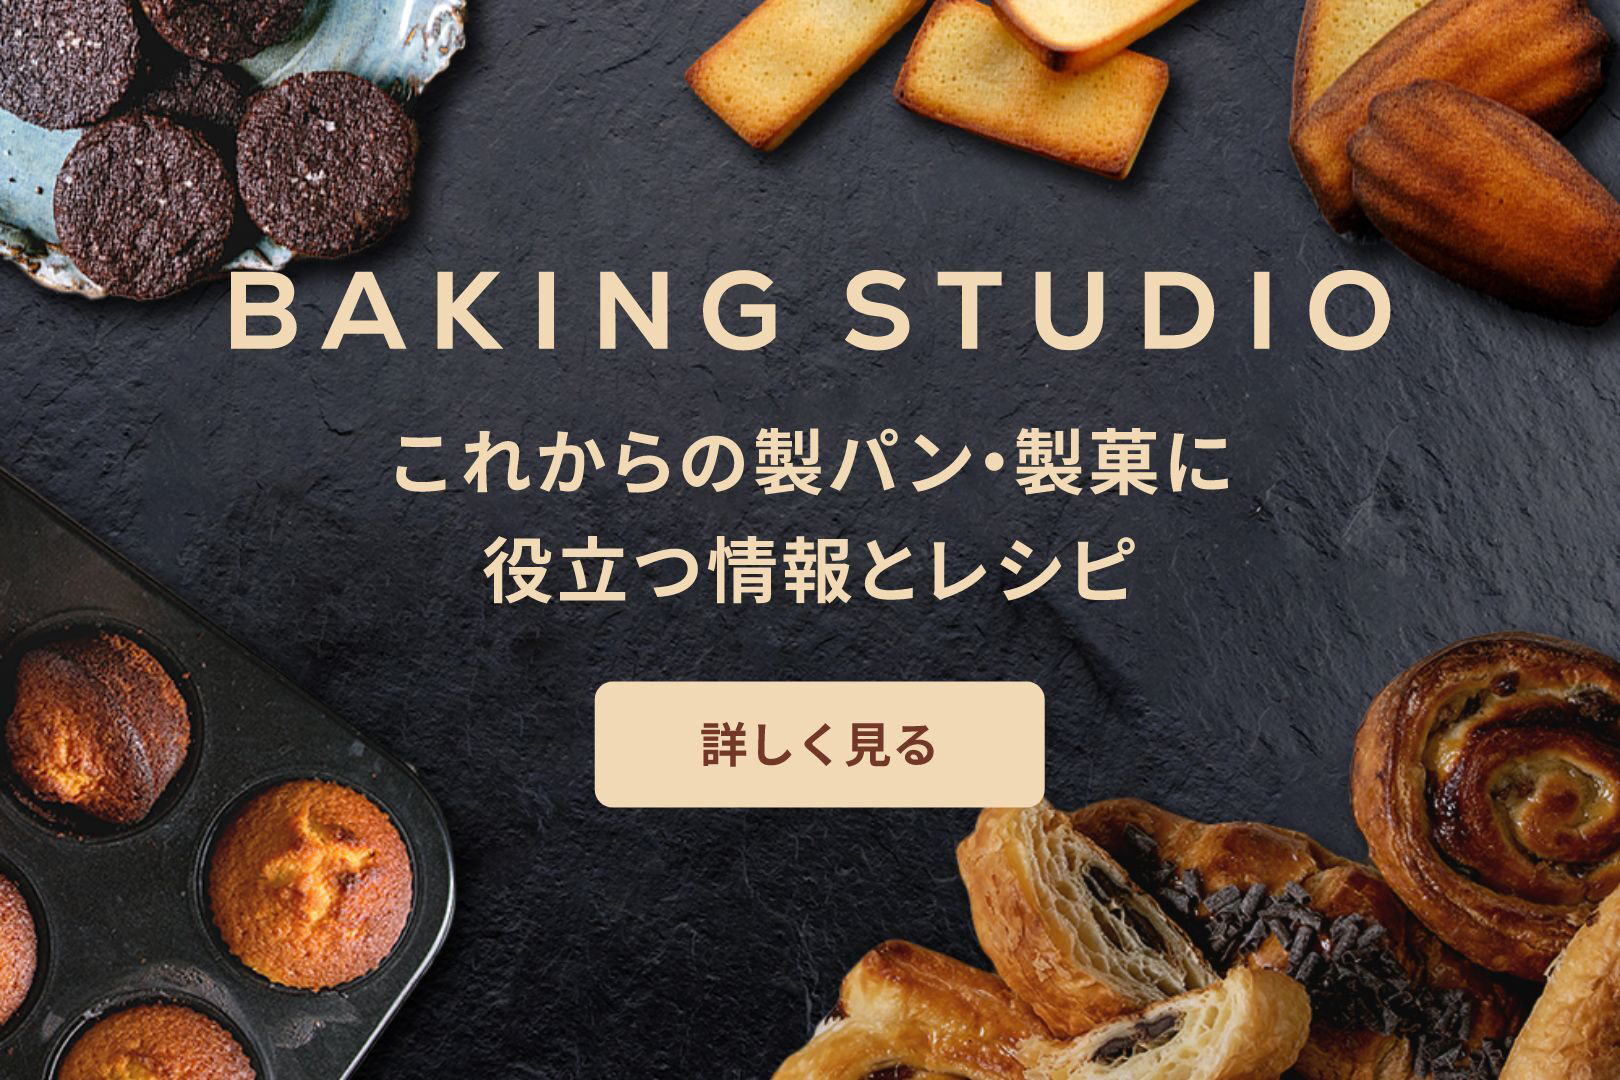 BAKING STUDIO　これからの製パン・製菓に役立つ情報とレシピ